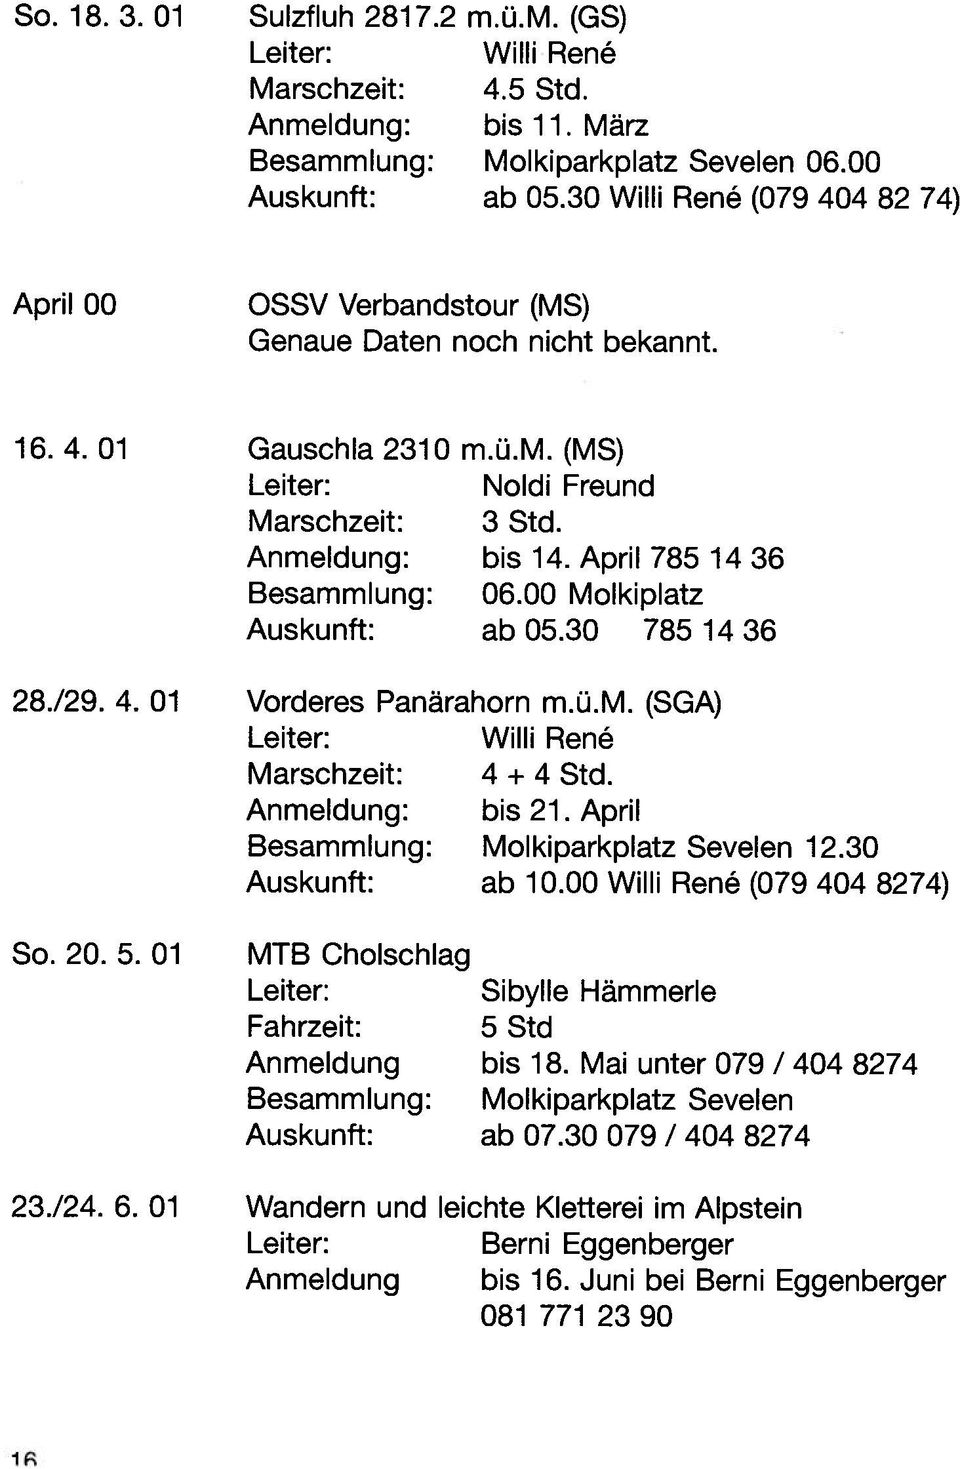 April 785 14 36 Besammlung: 06.00 Molkiplatz Auskunft: abo5.30 7851436 28./29. 4. 01 Vorderes Panärahorn m.ü.m. (SGA) Leiter: Willi Ren Marschzeit: 4 + 4 Std. Anmeldung: bis 21.